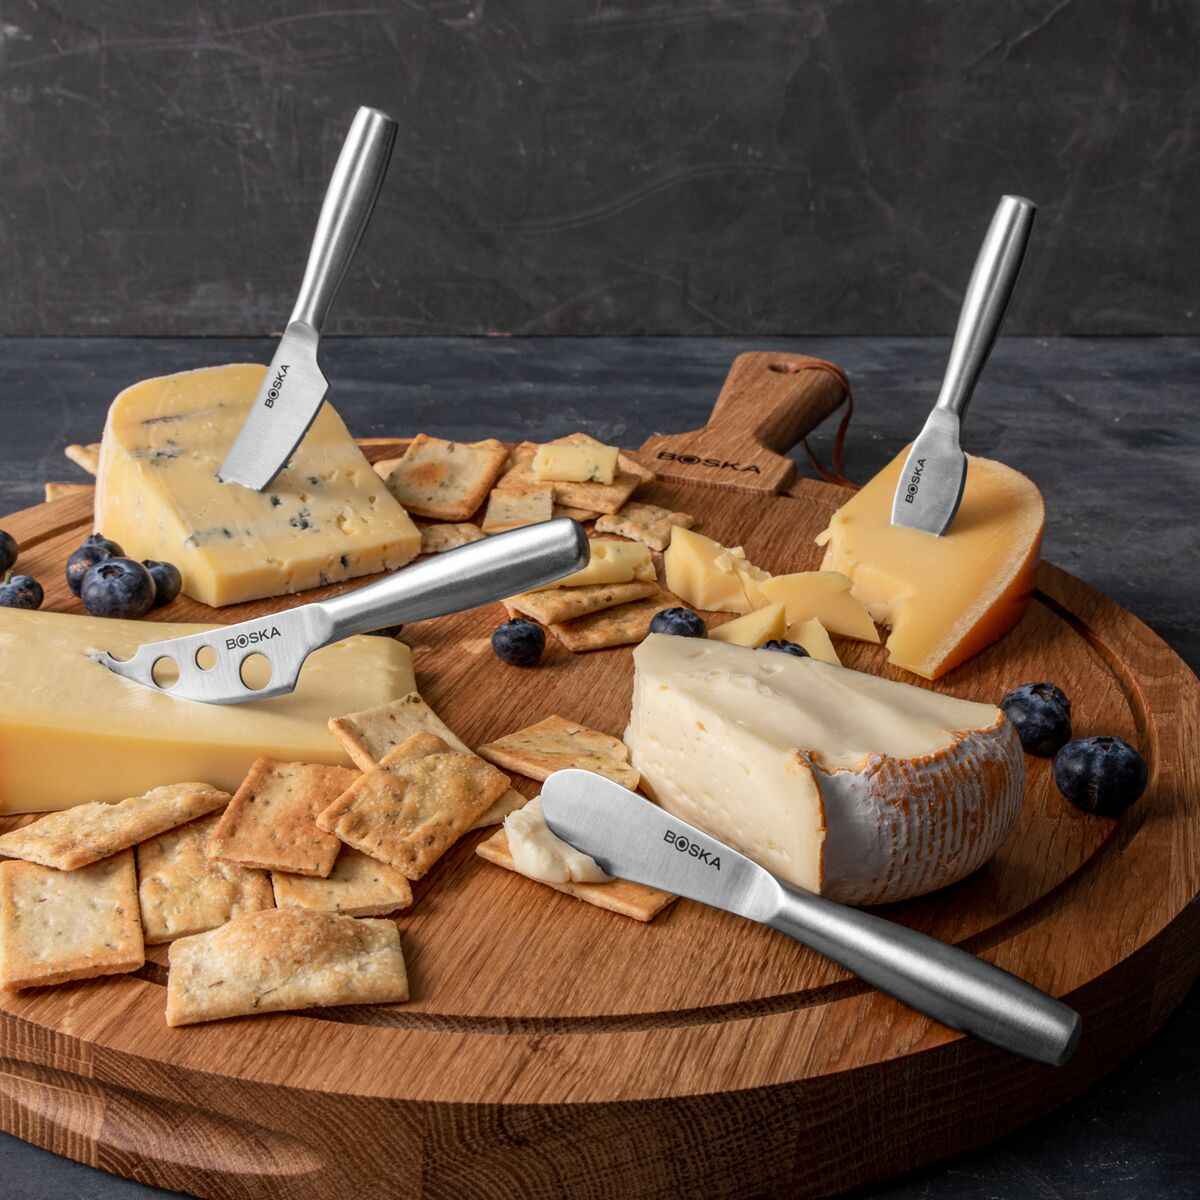 Set de couteaux à fromage